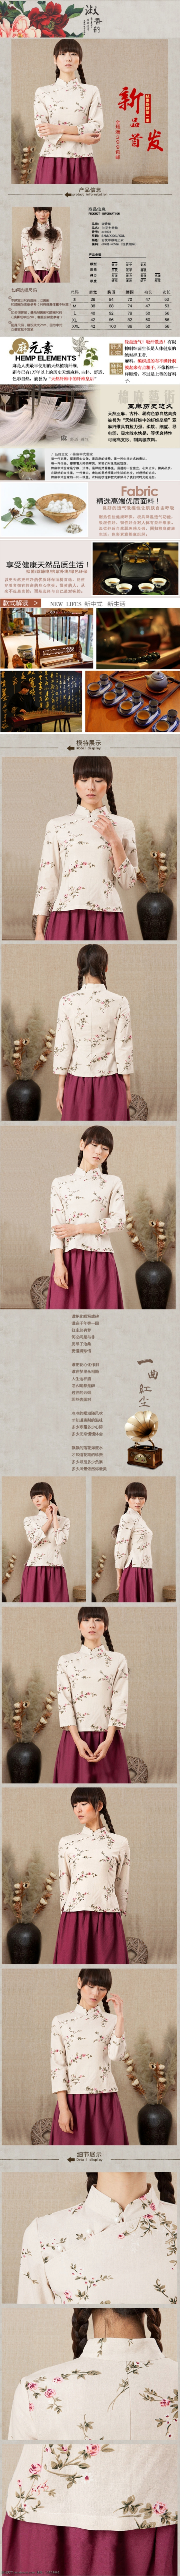 中式 女装 秋季 棉麻 旗袍 上衣 无线 端详 情 页 中式女装 旗袍上衣 改良唐装 灰色